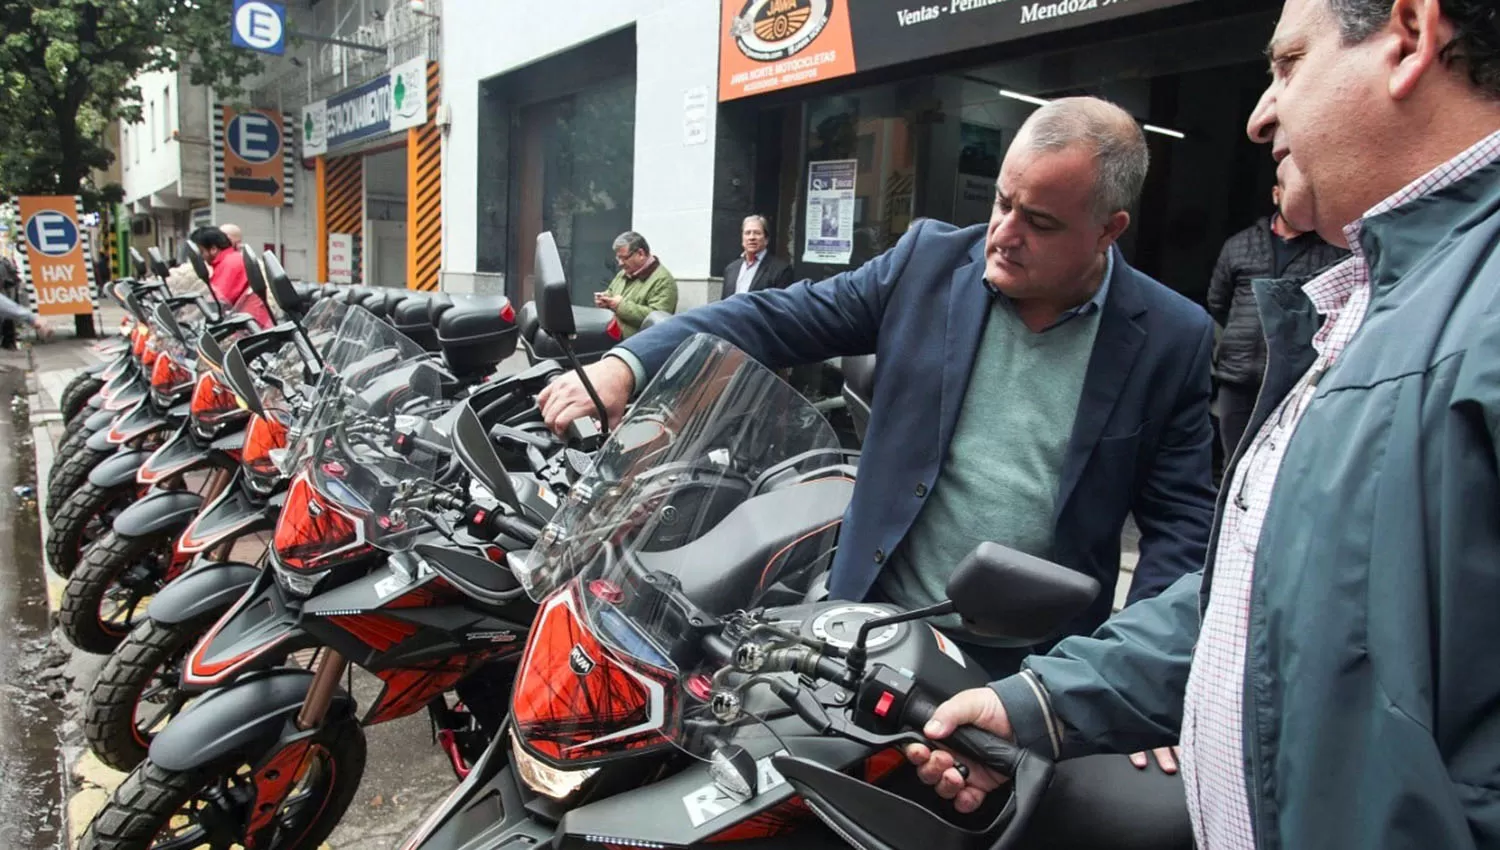 El intendente de Tafí Viejo, Javier Noguera, probando una de las motos.